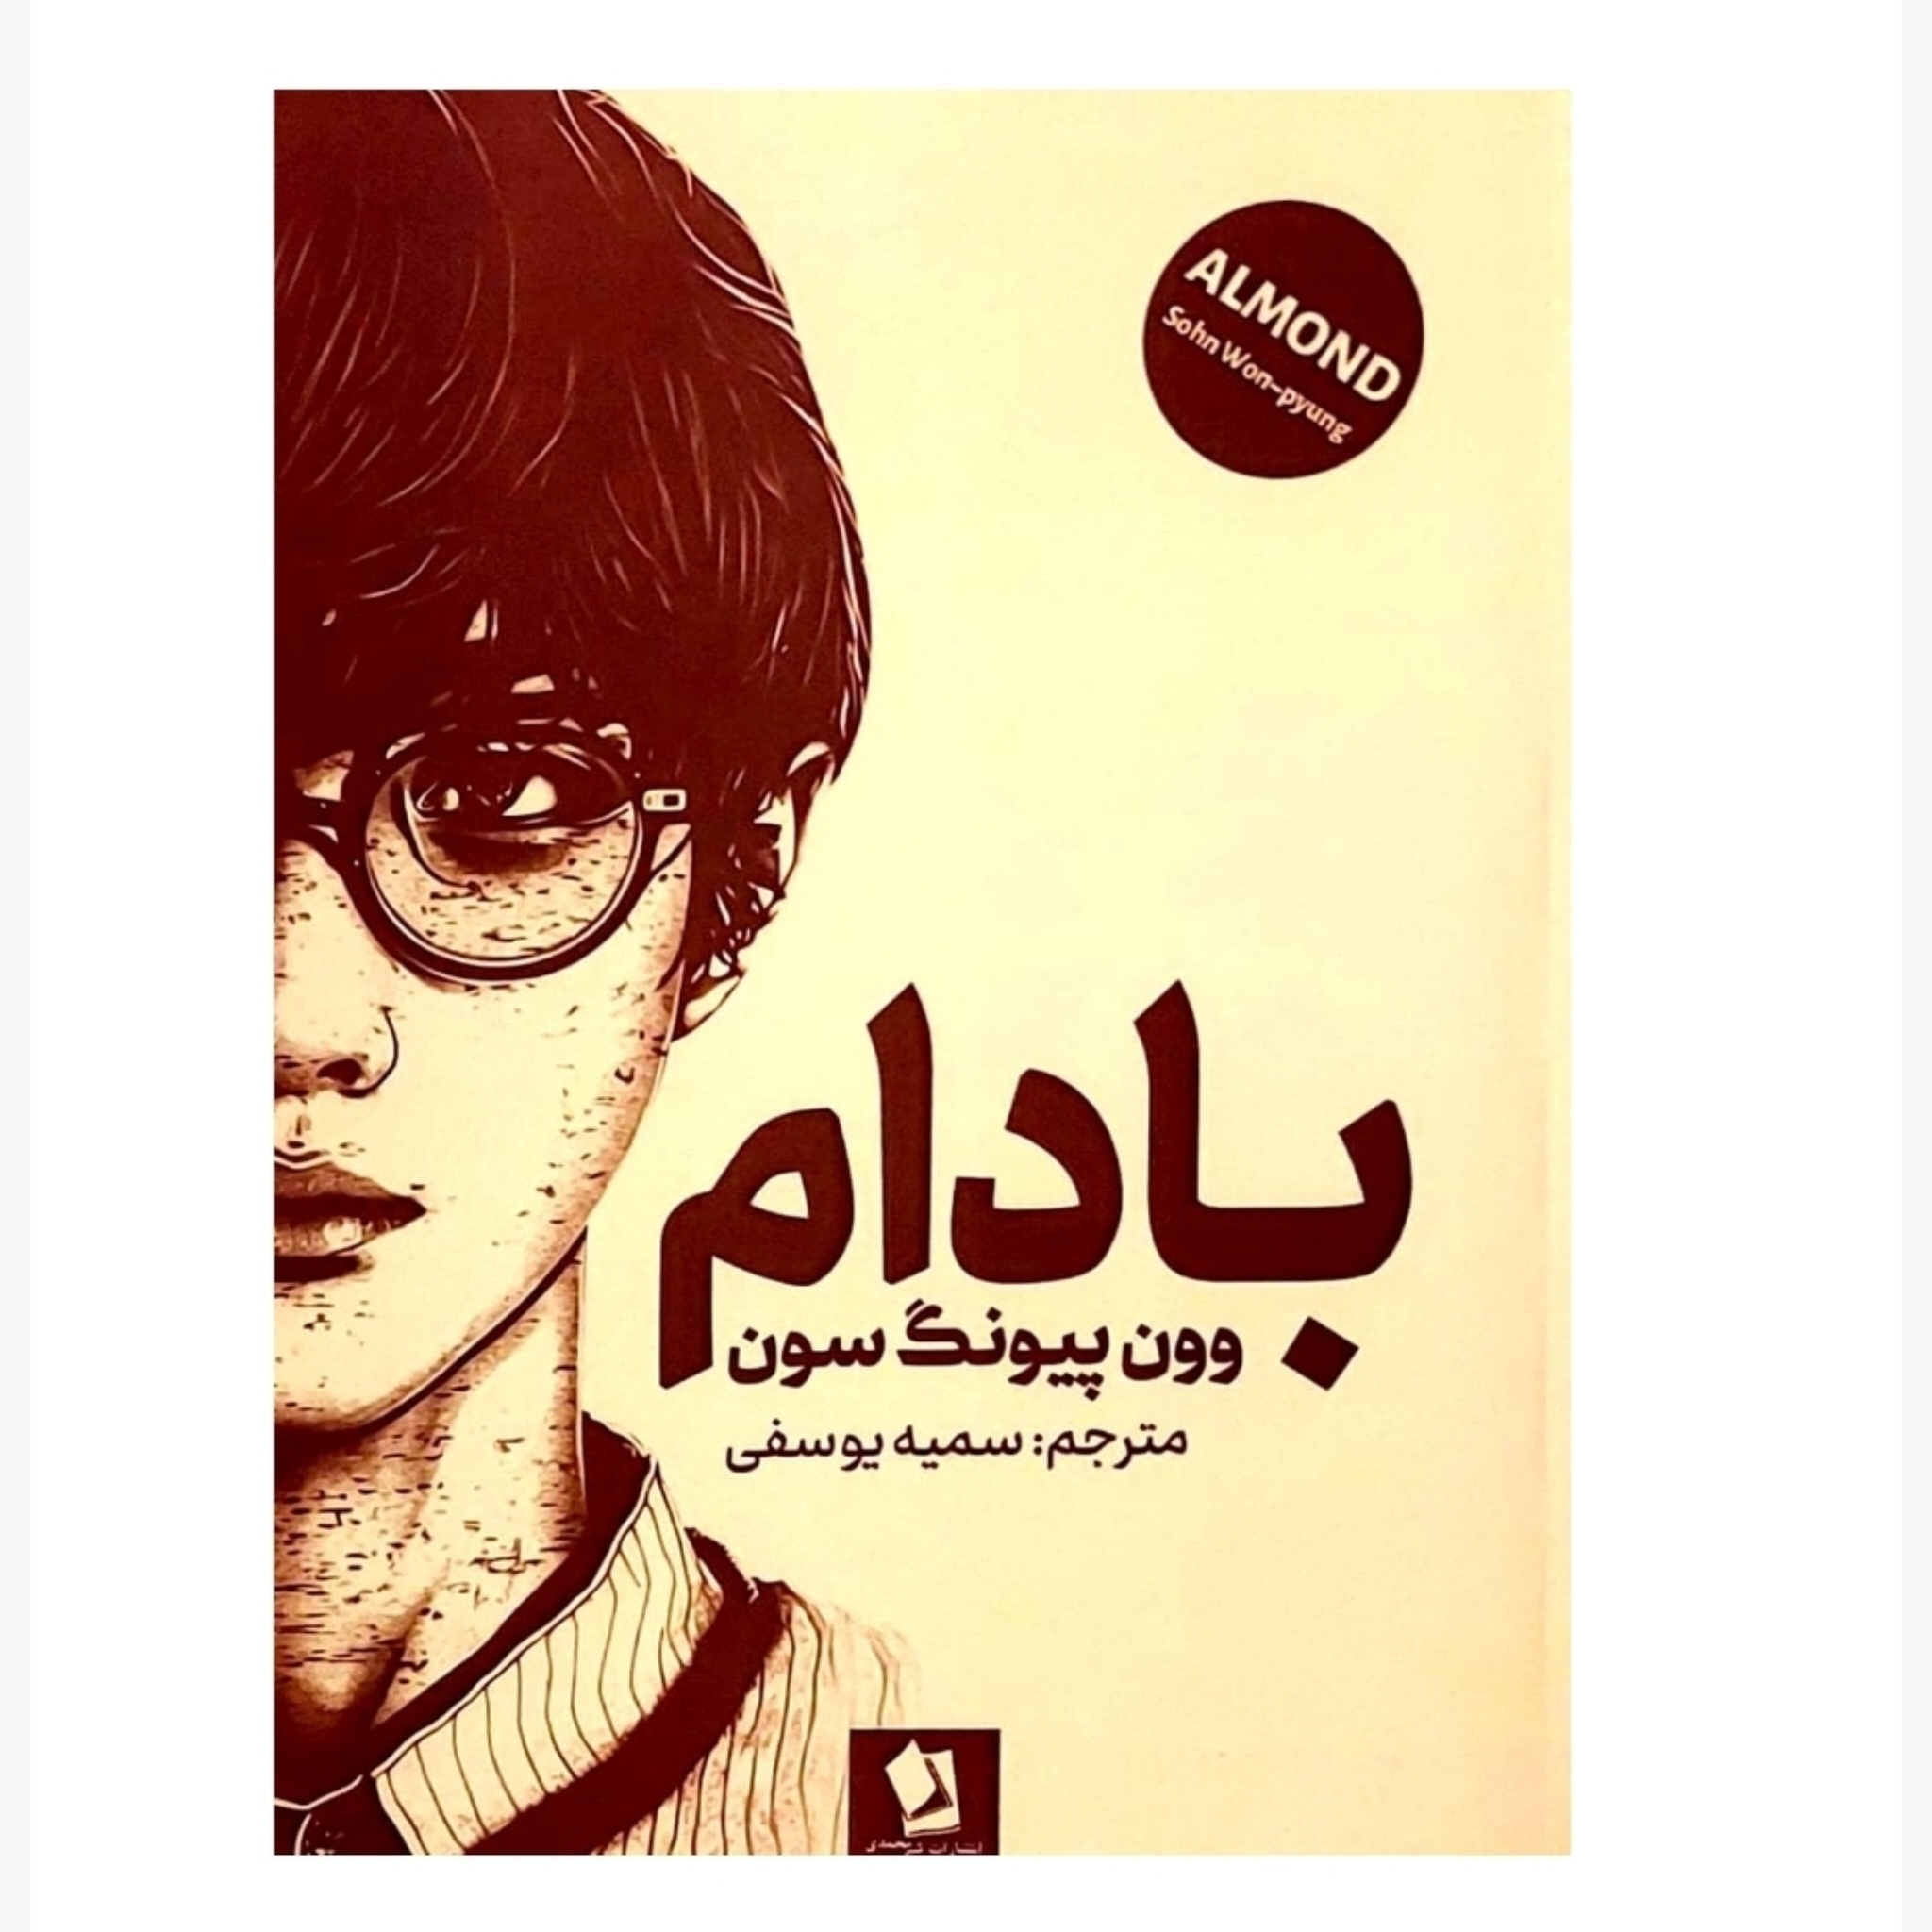 کتاب بادام اثر وون پیونگ سون انتشارات شیرمحمدی